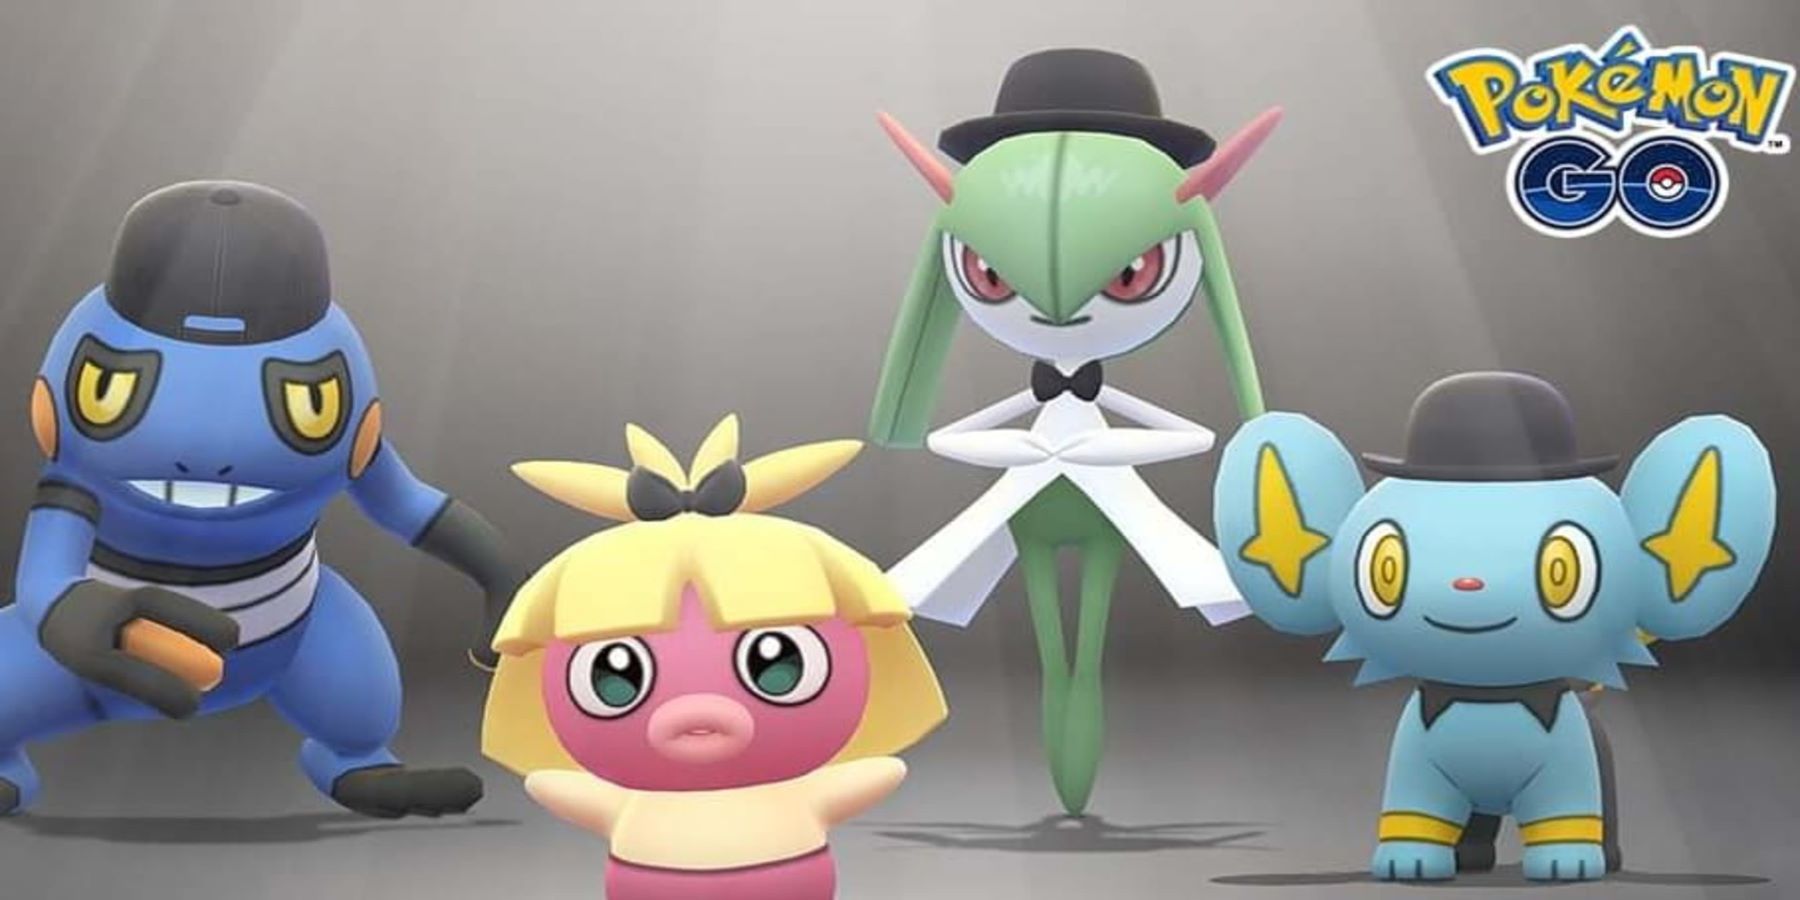 Pokemon Go’nun Moda Haftası etkinliği karakter özelleştirmesinde bir kusur vurgular